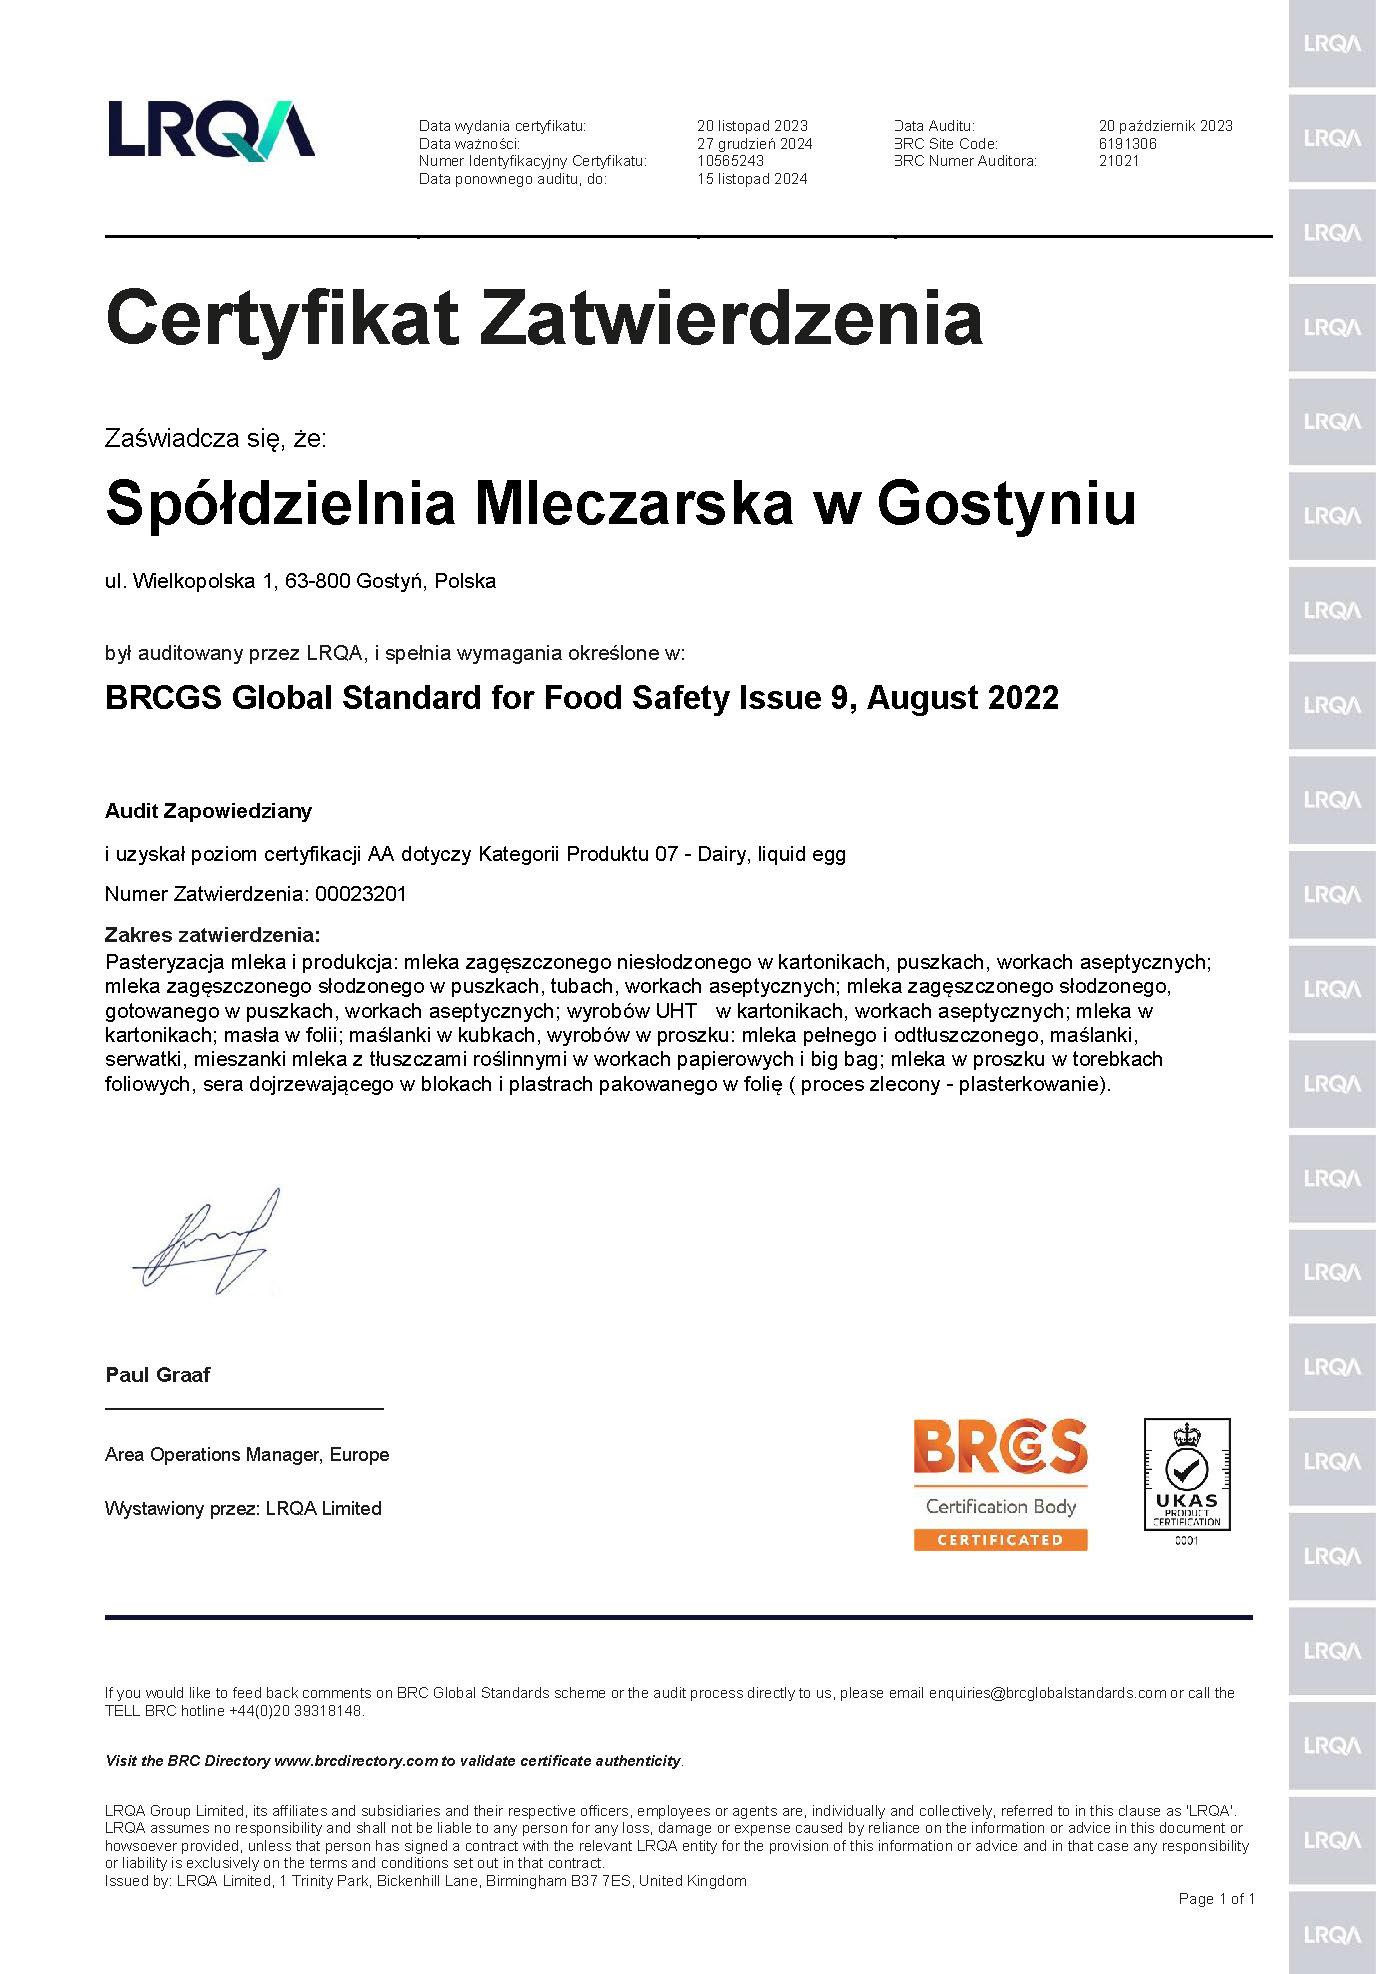 Certyfikat BRC ważny do 27.12.2024_PL